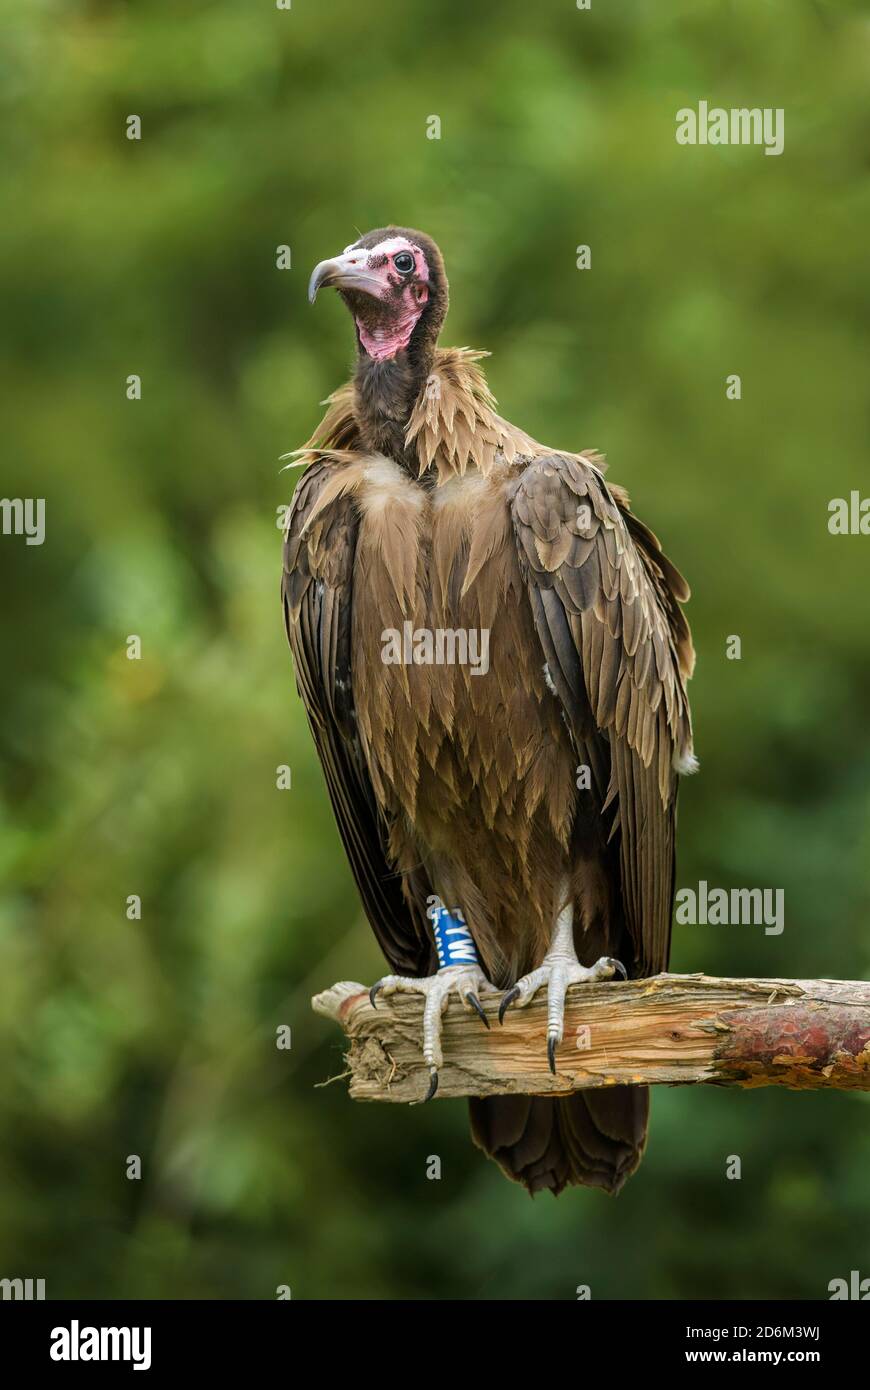 Avvoltoio con cappuccio - Necrosyrtes monachus, criticamente minacciato vecchio mondo avvoltoio da boschi africani e foreste, Etiopia. Foto Stock